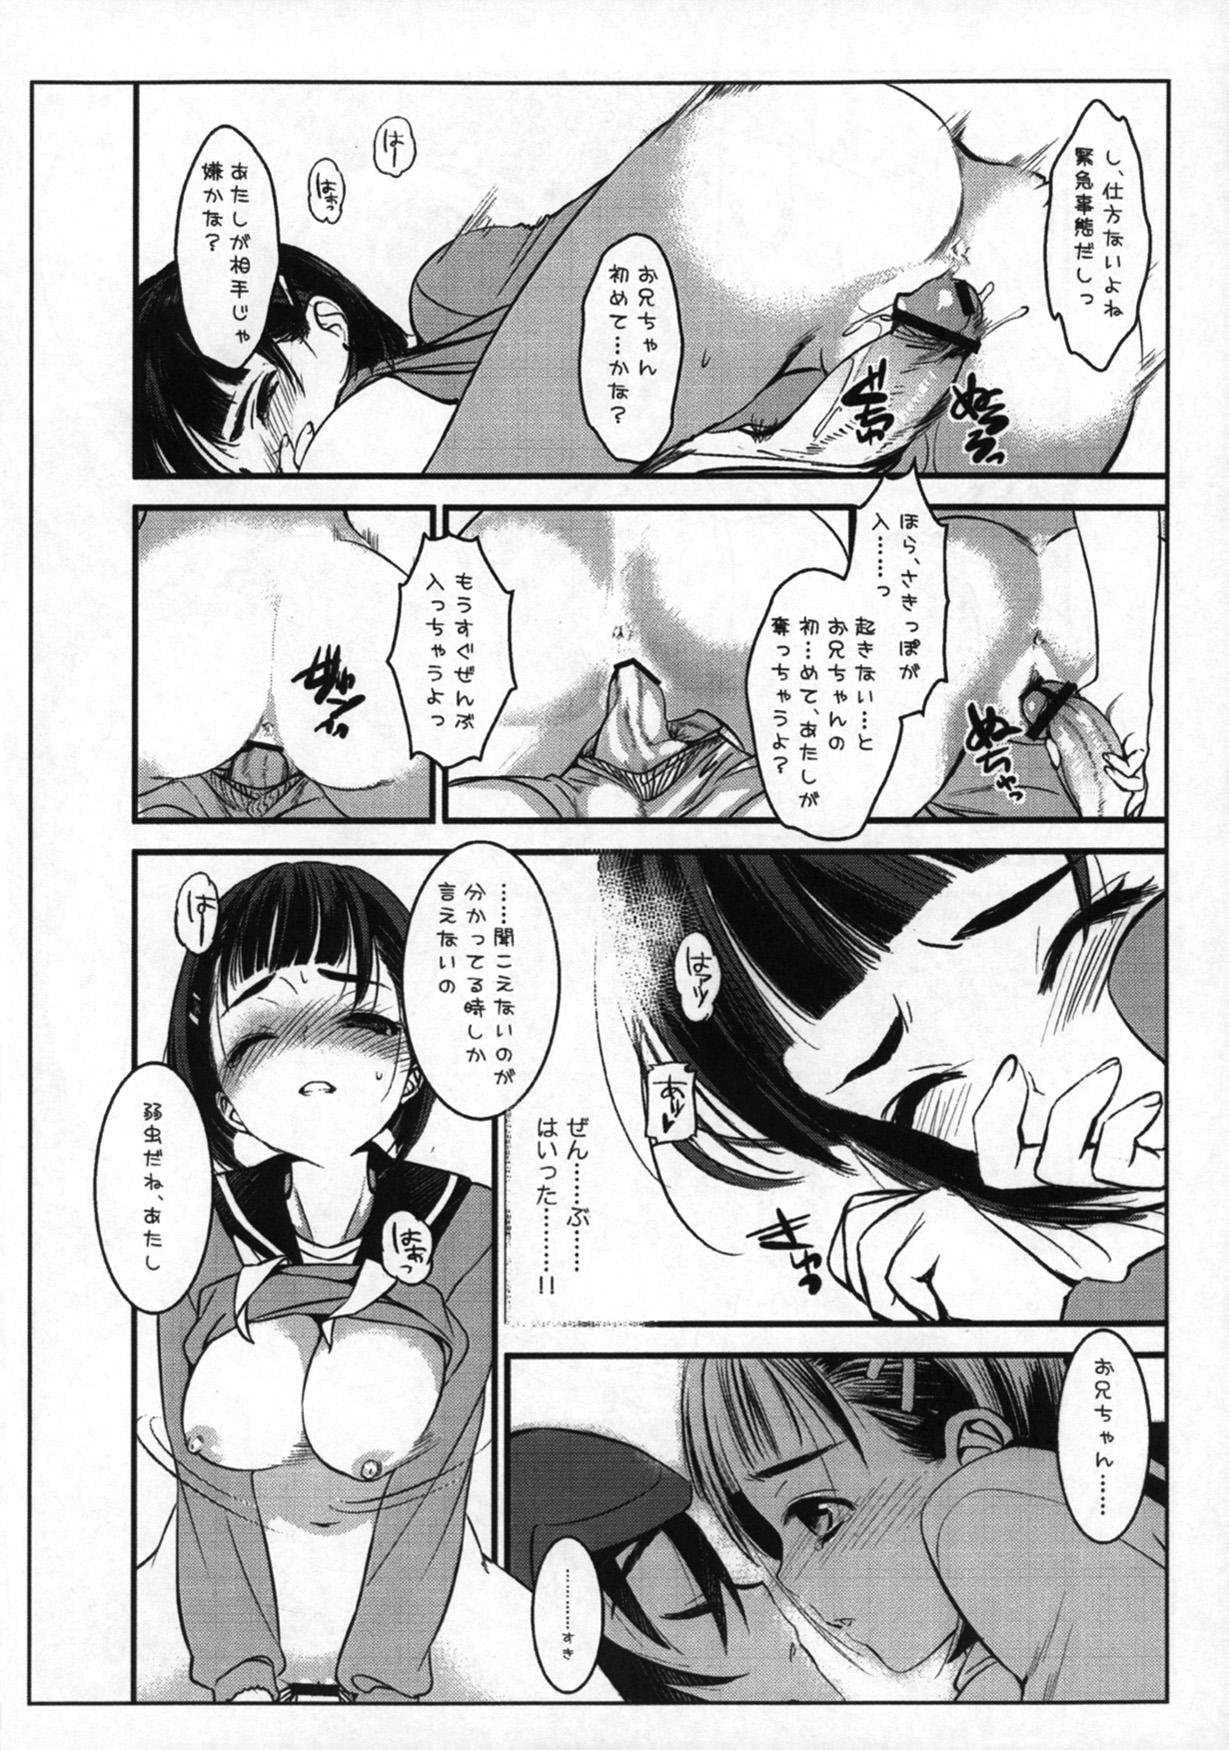 Naija Oniichan dakedo Itoko dakara ♥ Kozukuri shitemo ♥ Mondai naiyone - Sword art online Hunk - Page 6